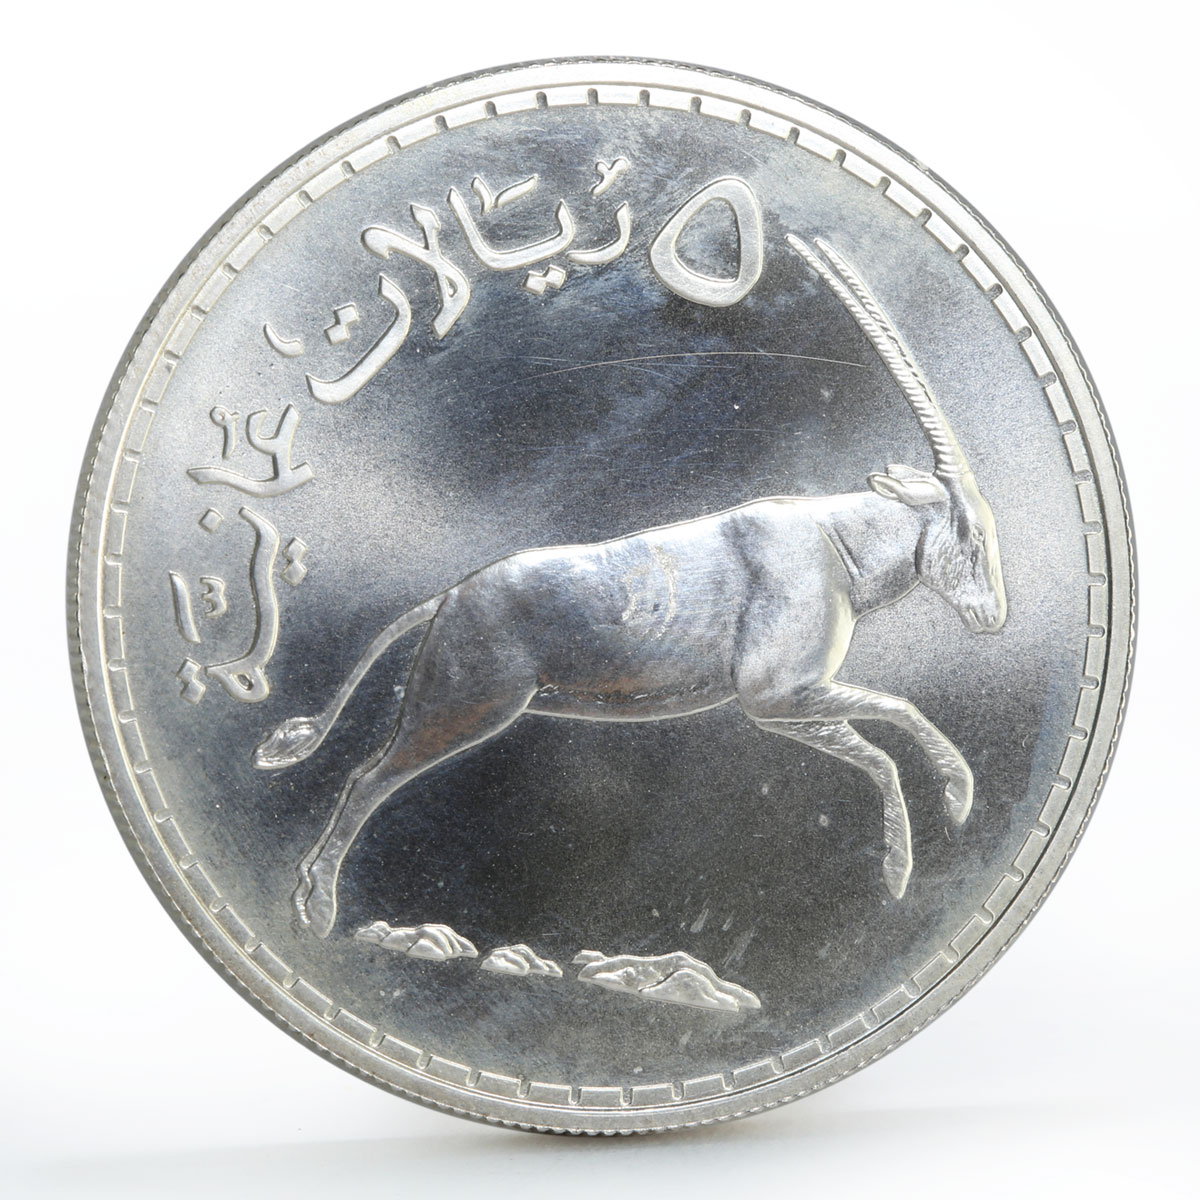 Oman 5 rials Arabian White Oryx Qaboos sivler coin 1976